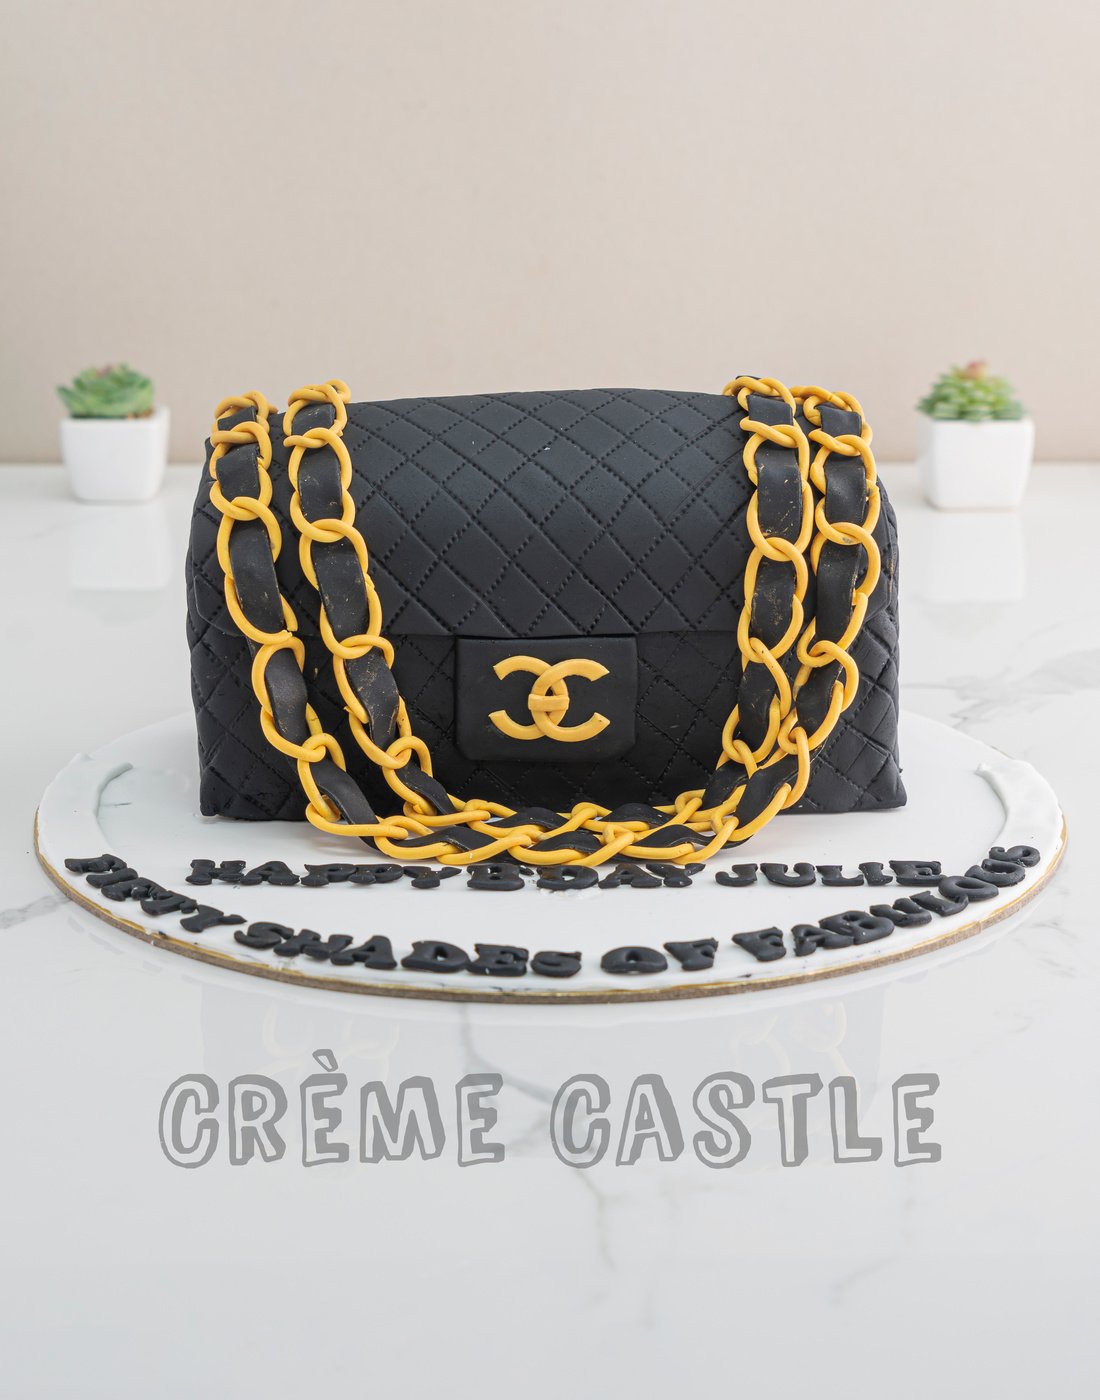 Girly Purse Cake | Jennifer By Design's Blog